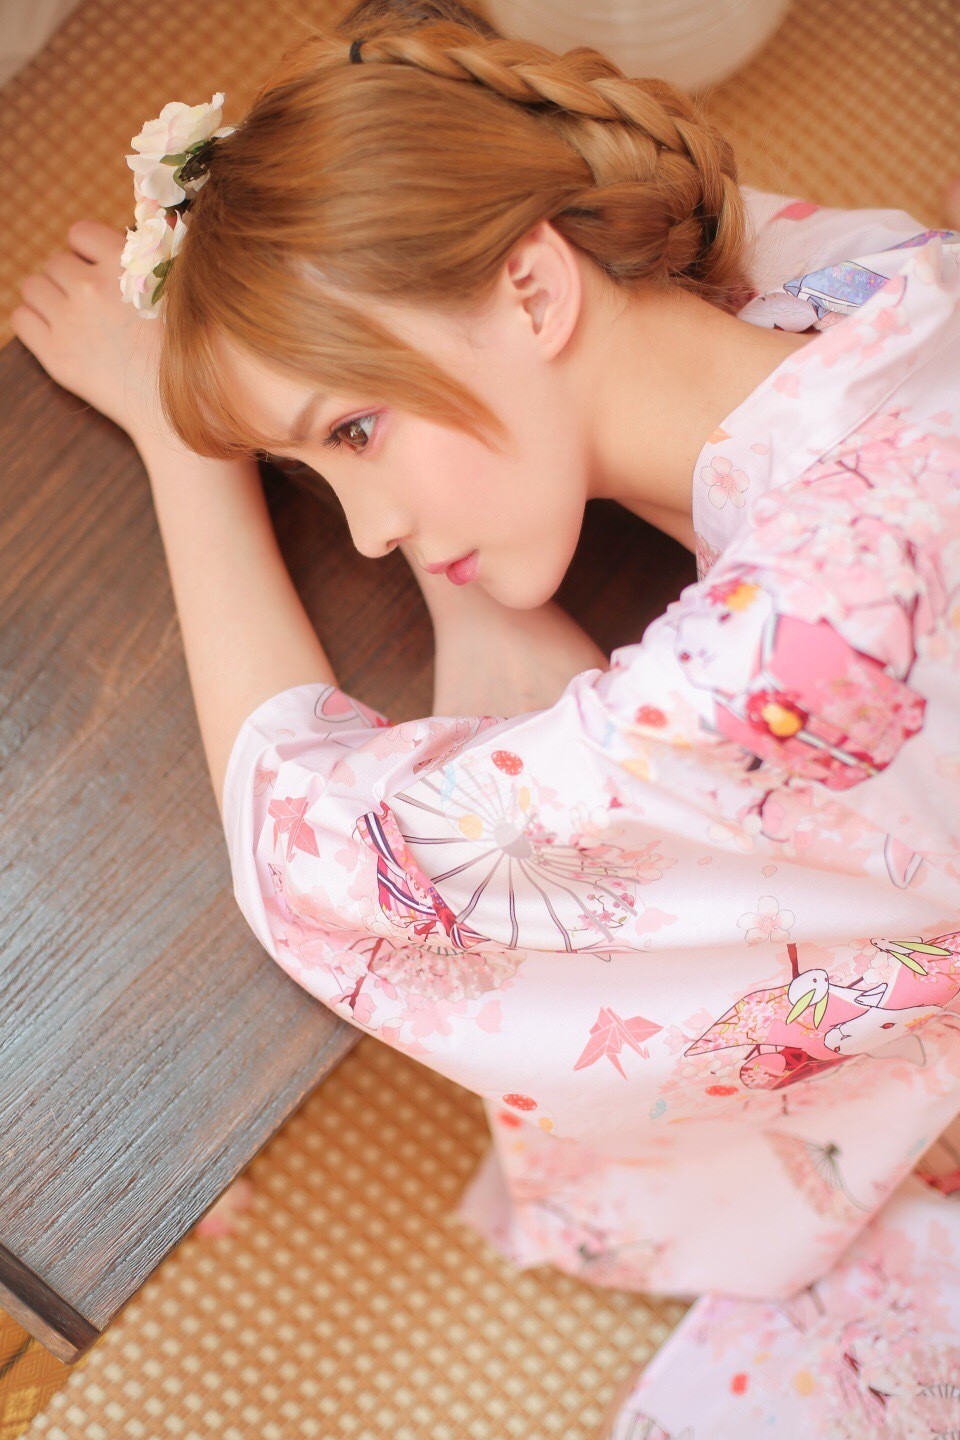 粉嫩日本和服美女唯美烂漫写真高清图片